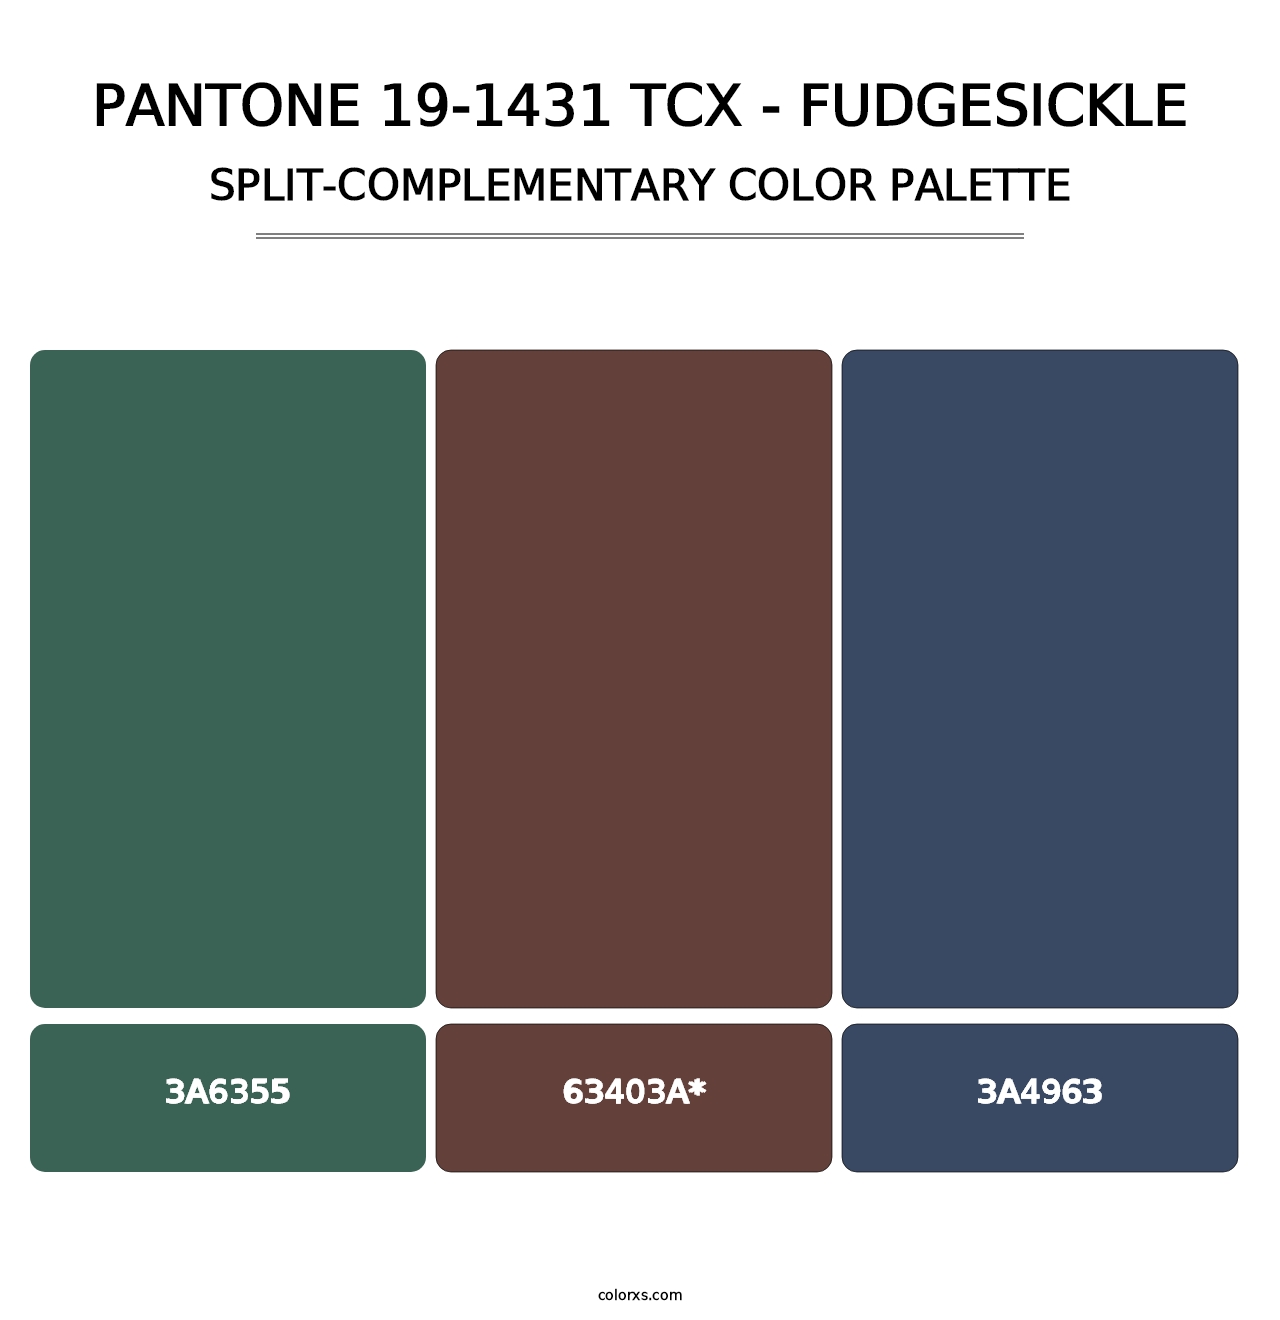 PANTONE 19-1431 TCX - Fudgesickle - Split-Complementary Color Palette